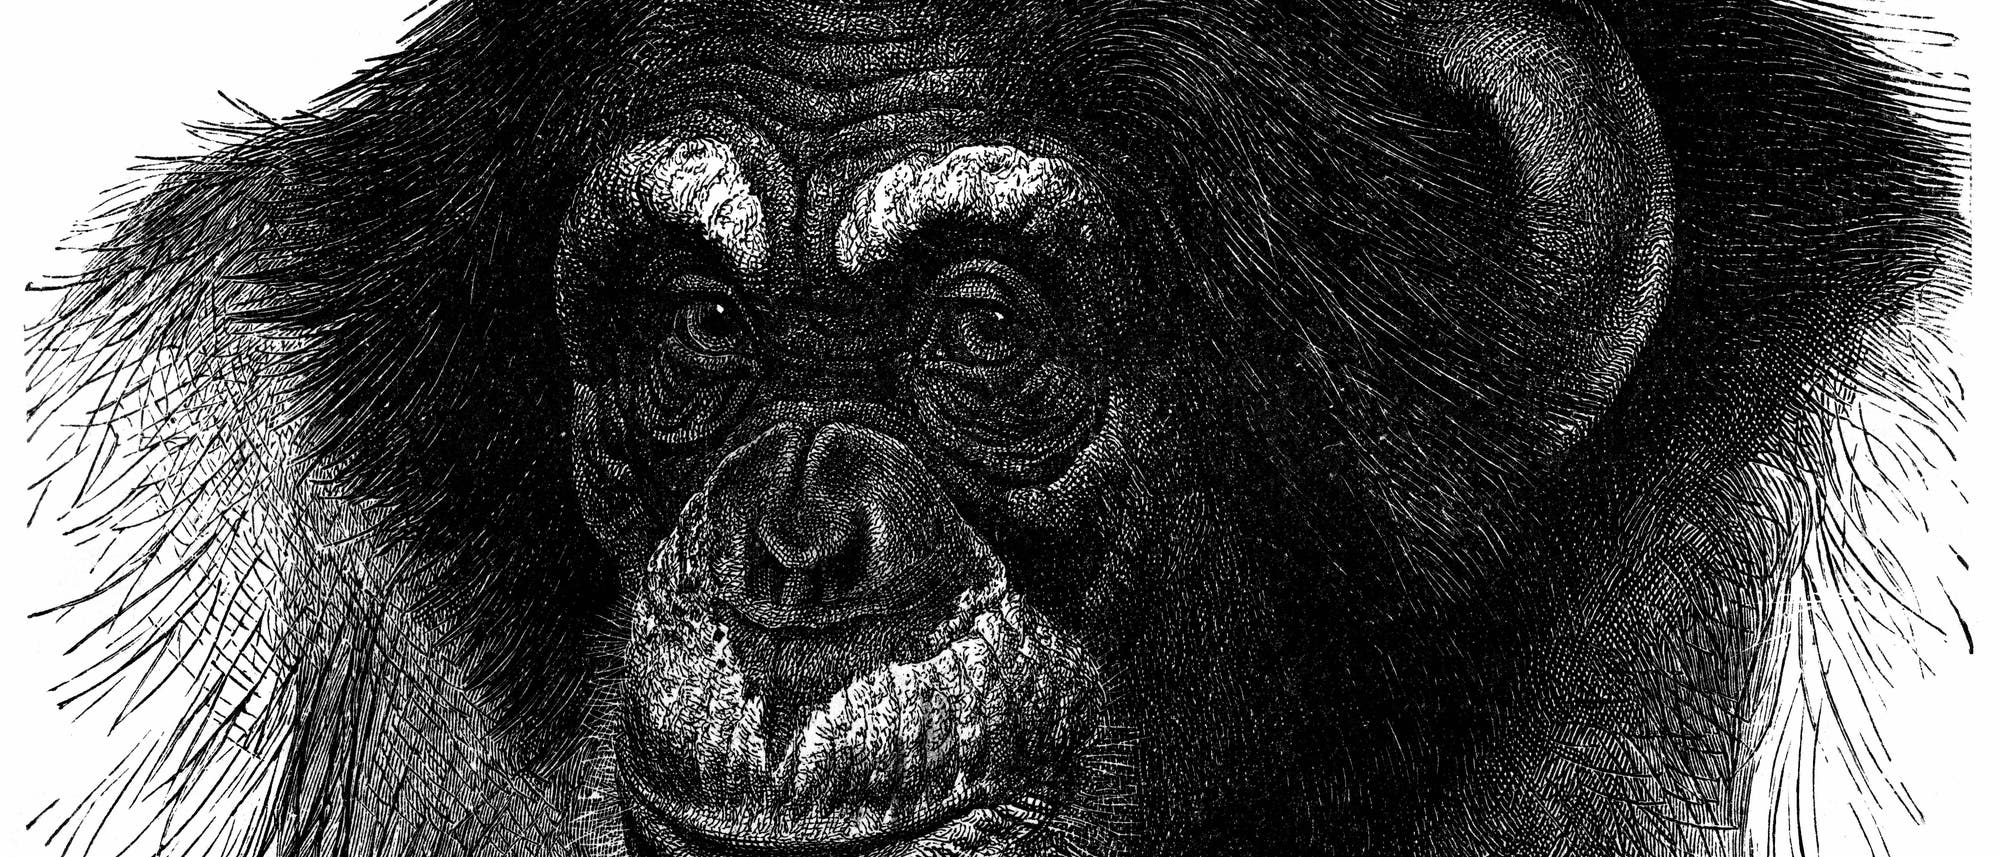 Ein gezeichnetes Porträt eines Schimpansen